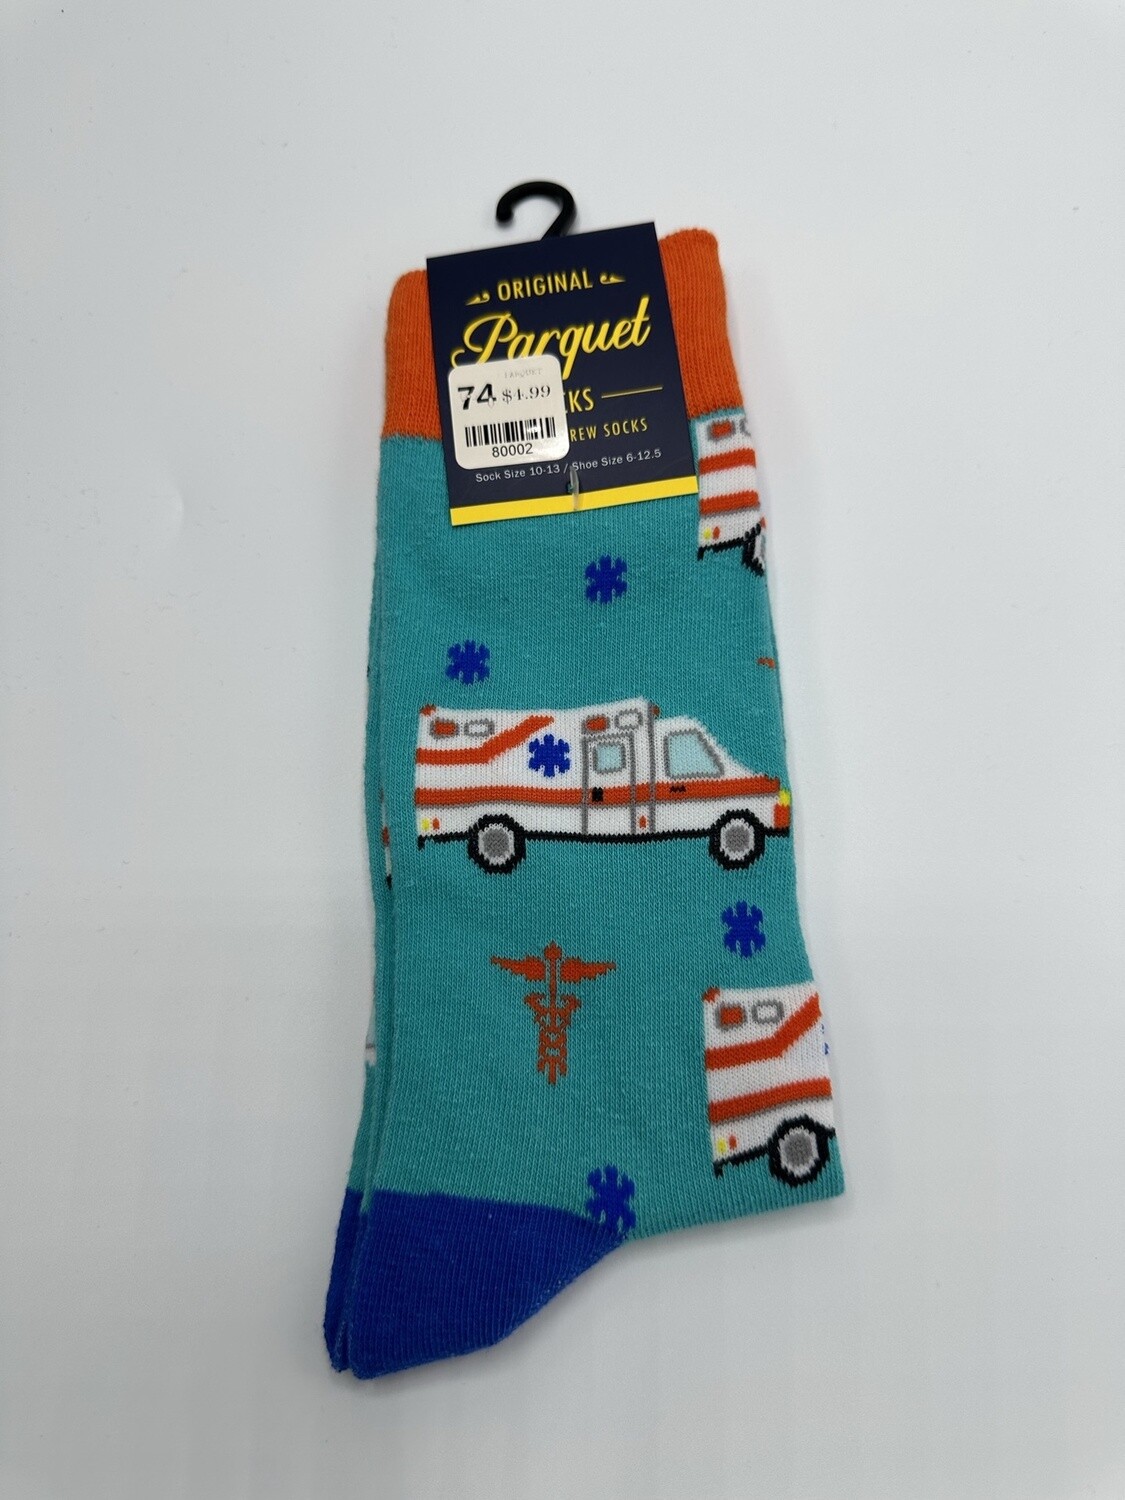 Ambulance - sock size 10-13